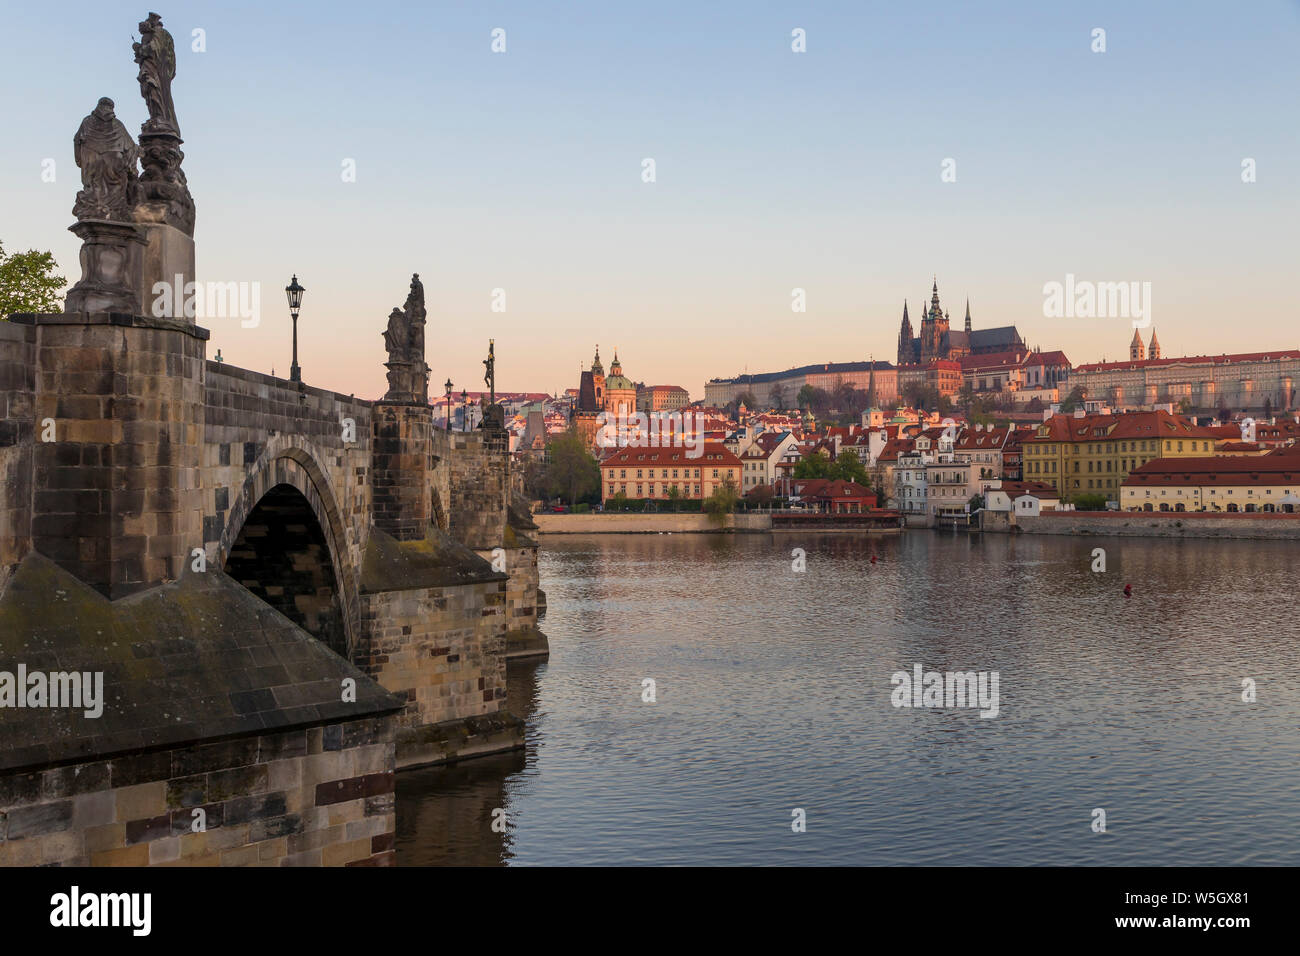 Vue depuis la Place Krizovnicke au Pont Charles, Château de Prague et cathédrale Saint-Guy, Site du patrimoine mondial de l'UNESCO, Prague, la Bohême, République Tchèque Banque D'Images